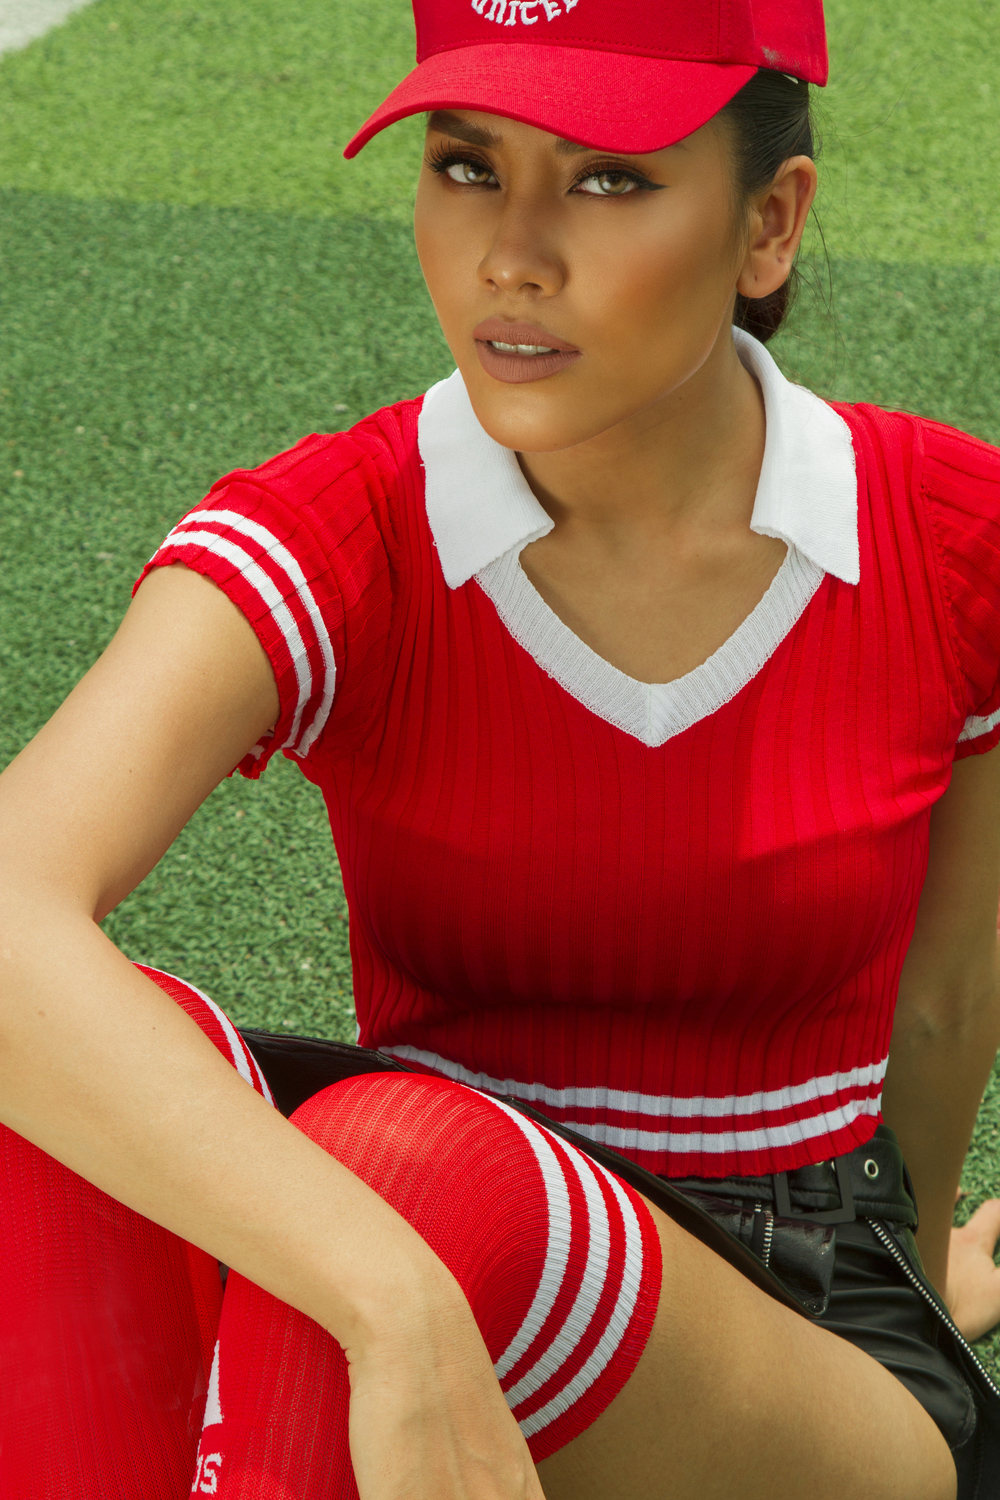 
Với bộ cánh gam màu đỏ chủ đạo này, Nguyễn Thị Loan như nổi bật trên nền cỏ xanh, những họa tiết sọc không chỉ toát lên được hết tinh thần World Cup mà còn khoe trọn dáng nuột nà và đáng ghen tị của mỹ nhân.